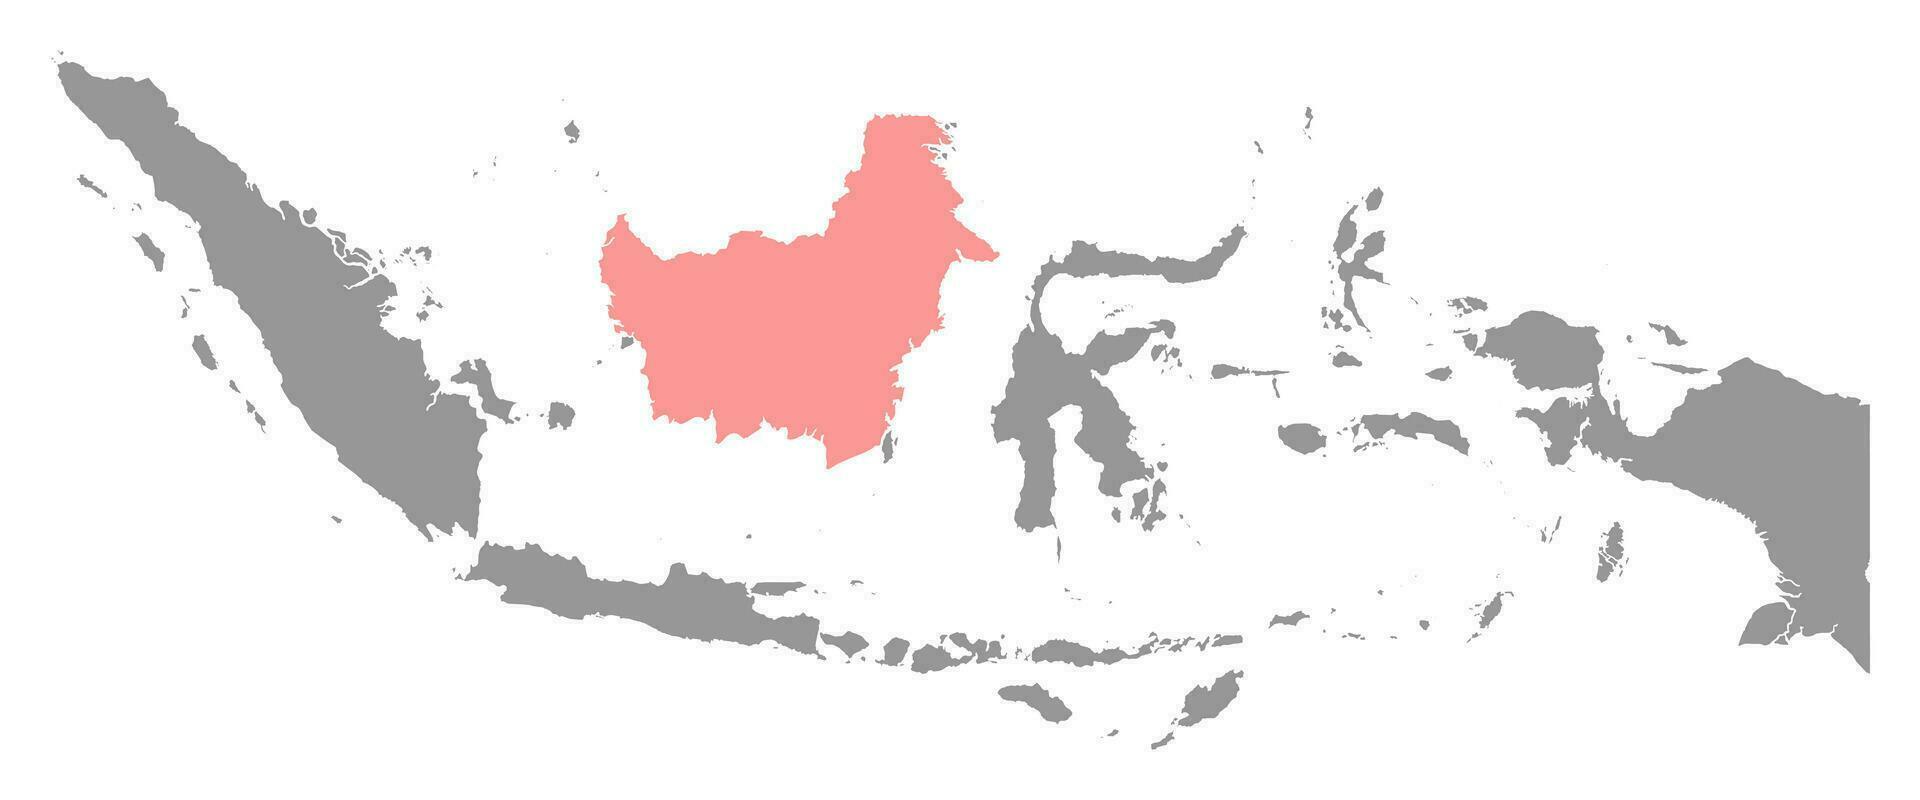 Kalimantan kaart, Indonesisch deel van de eiland van Borneo, regio van Indonesië. vector illustratie.